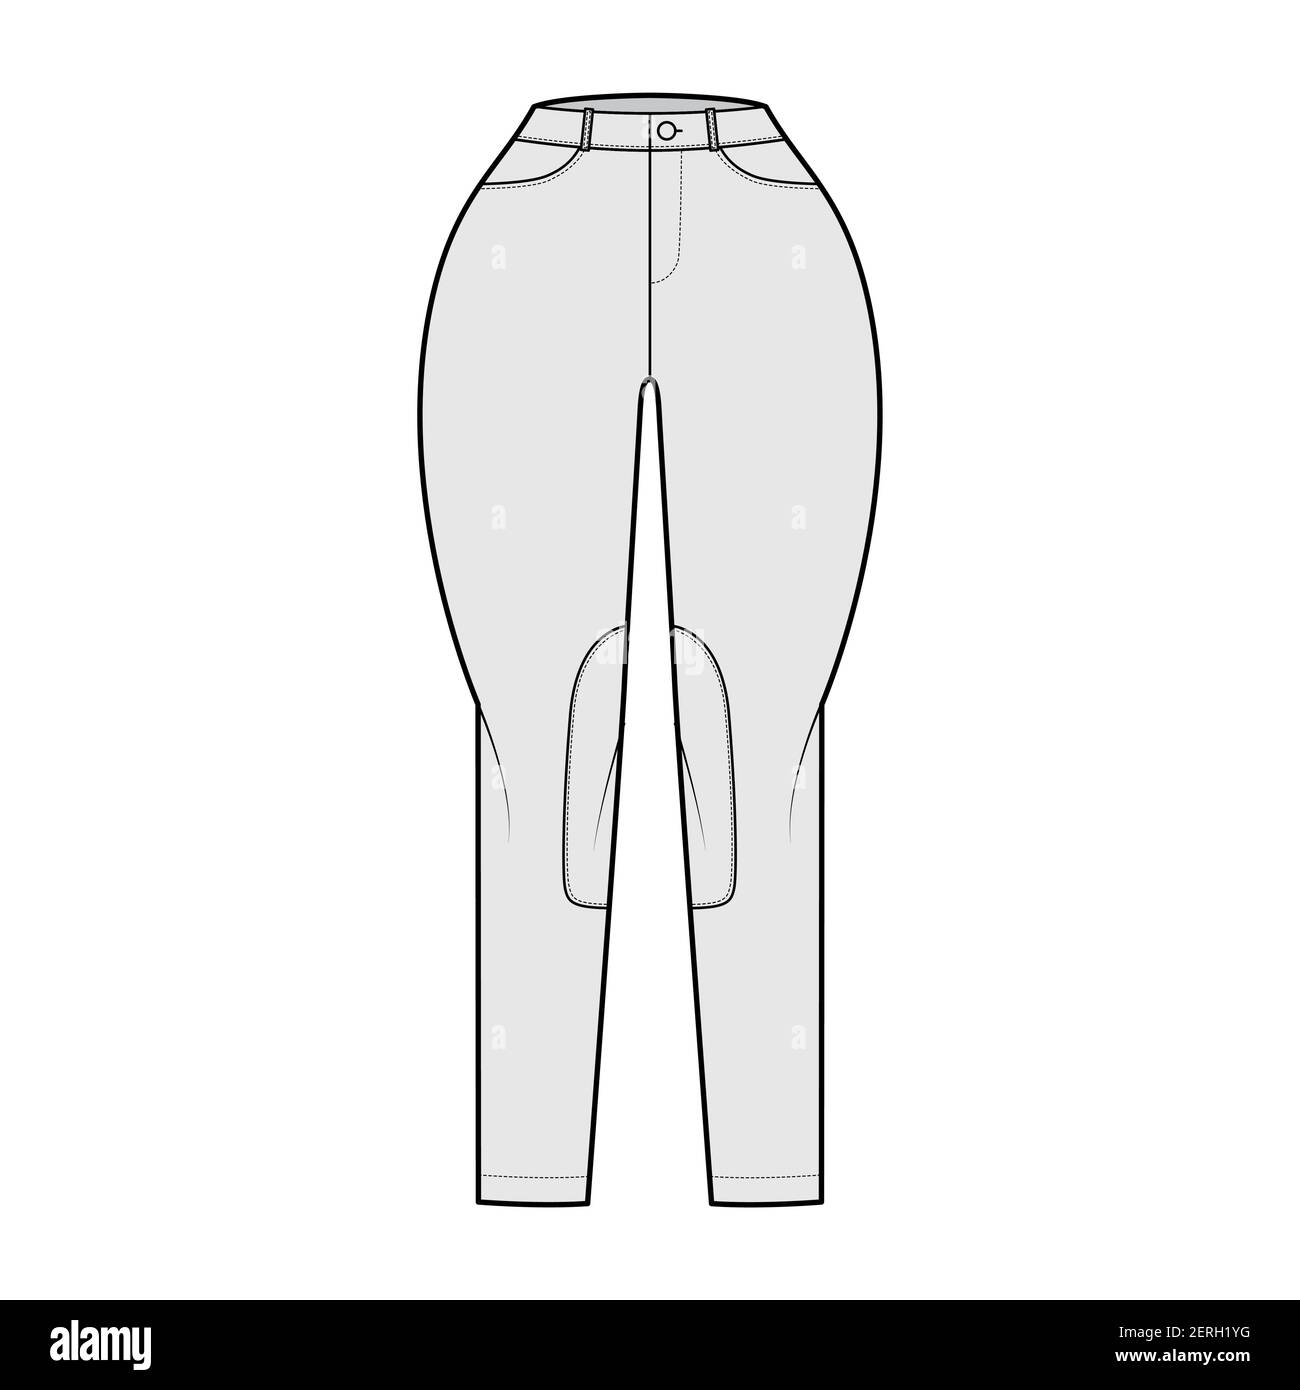 Jean Classic Jodhpurs Jean pantalon technique de mode illustration avec taille normale, taille haute, poches, passants de ceinture. Modèle de vêtement à fond plat sur le devant, de couleur grise. Femmes, hommes, maquette de CAD unisex Illustration de Vecteur